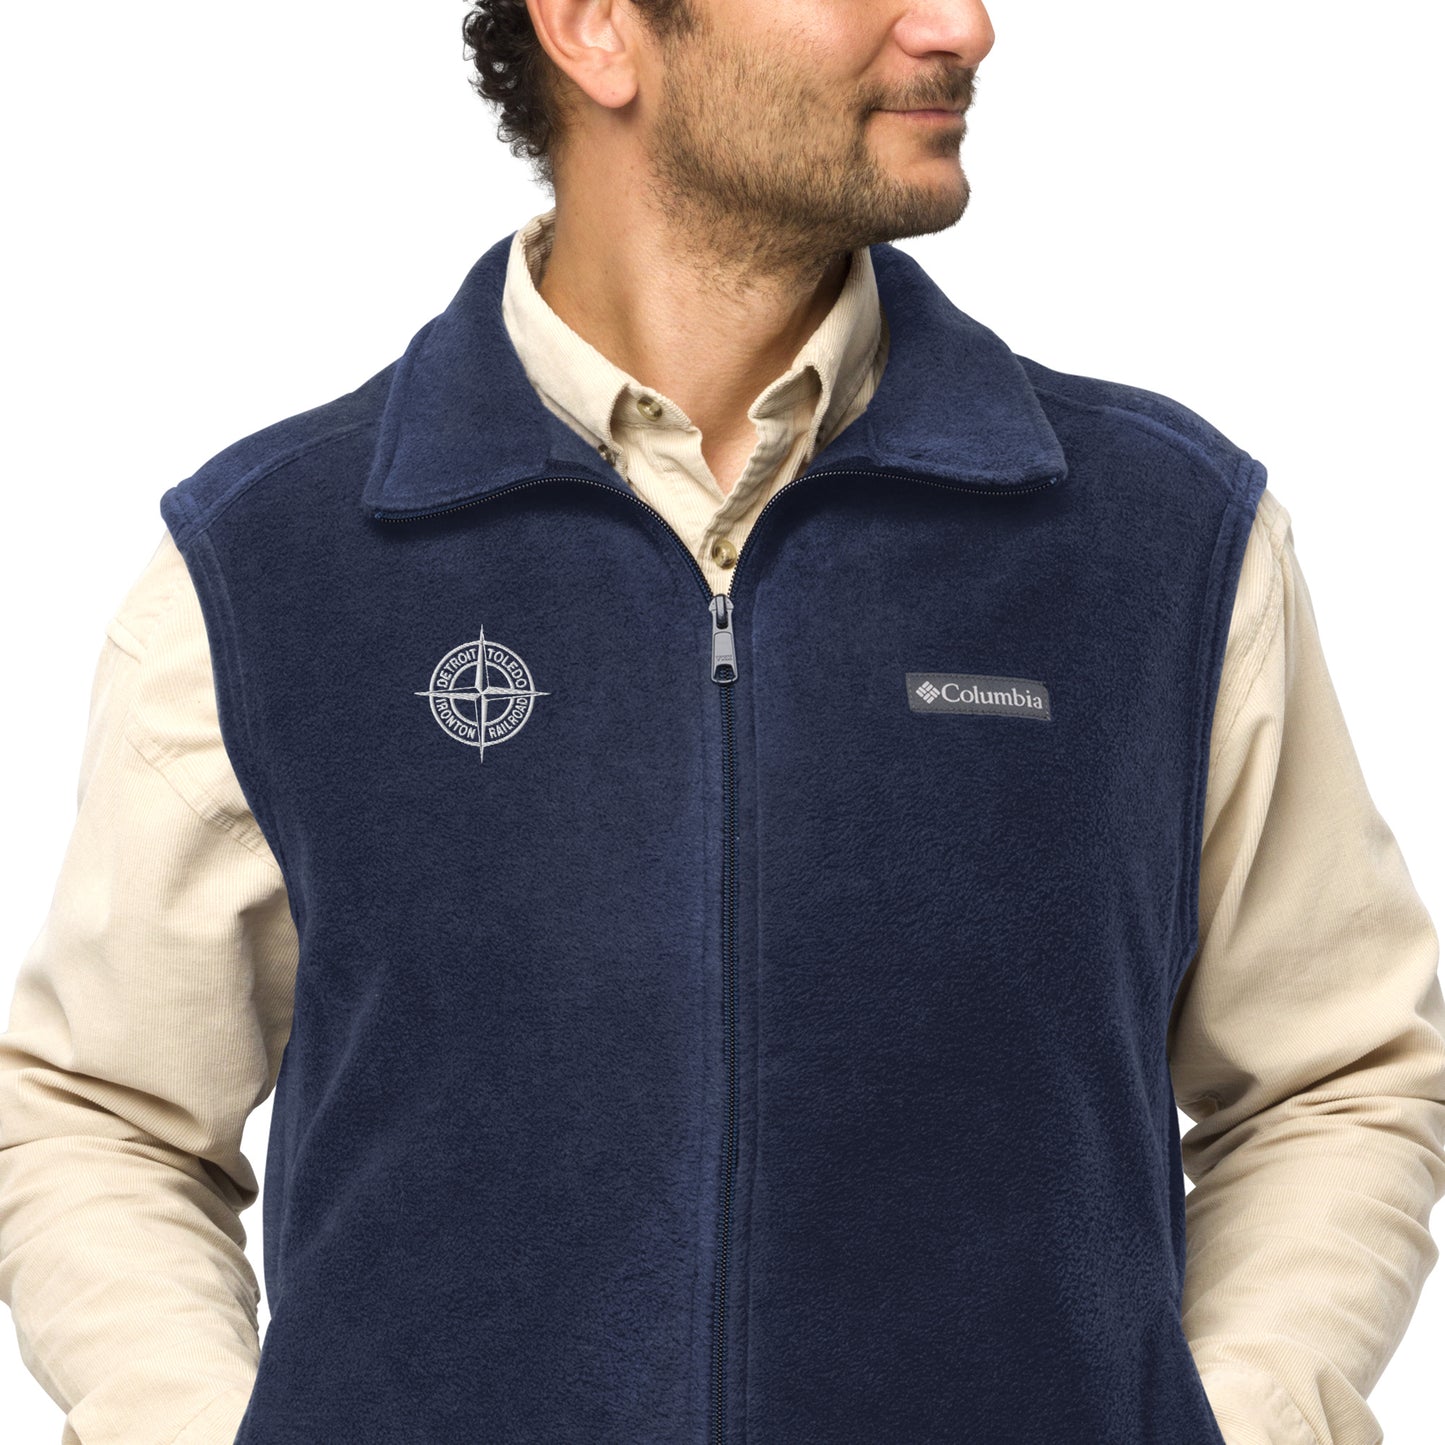 Detroit & Toledo Ironton [DT&I] Compass Men’s Columbia fleece vest